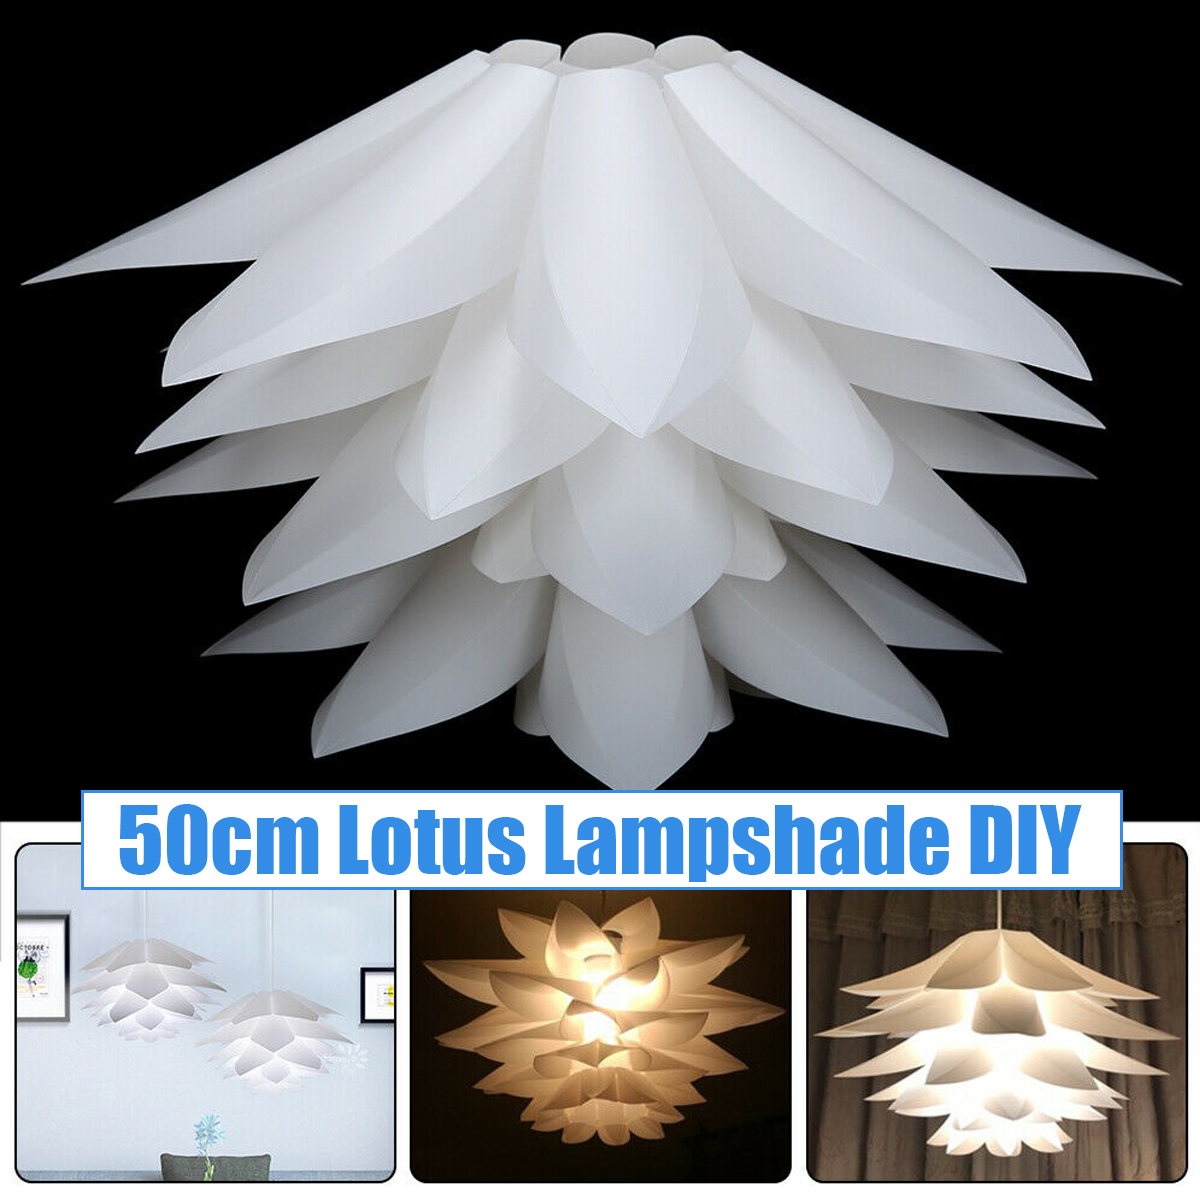 7-Colors-DIY-Lotus-Chandelier-Shape-Ceiling-Pendant-Light-Lampshade-Home-Decor-1720633-1